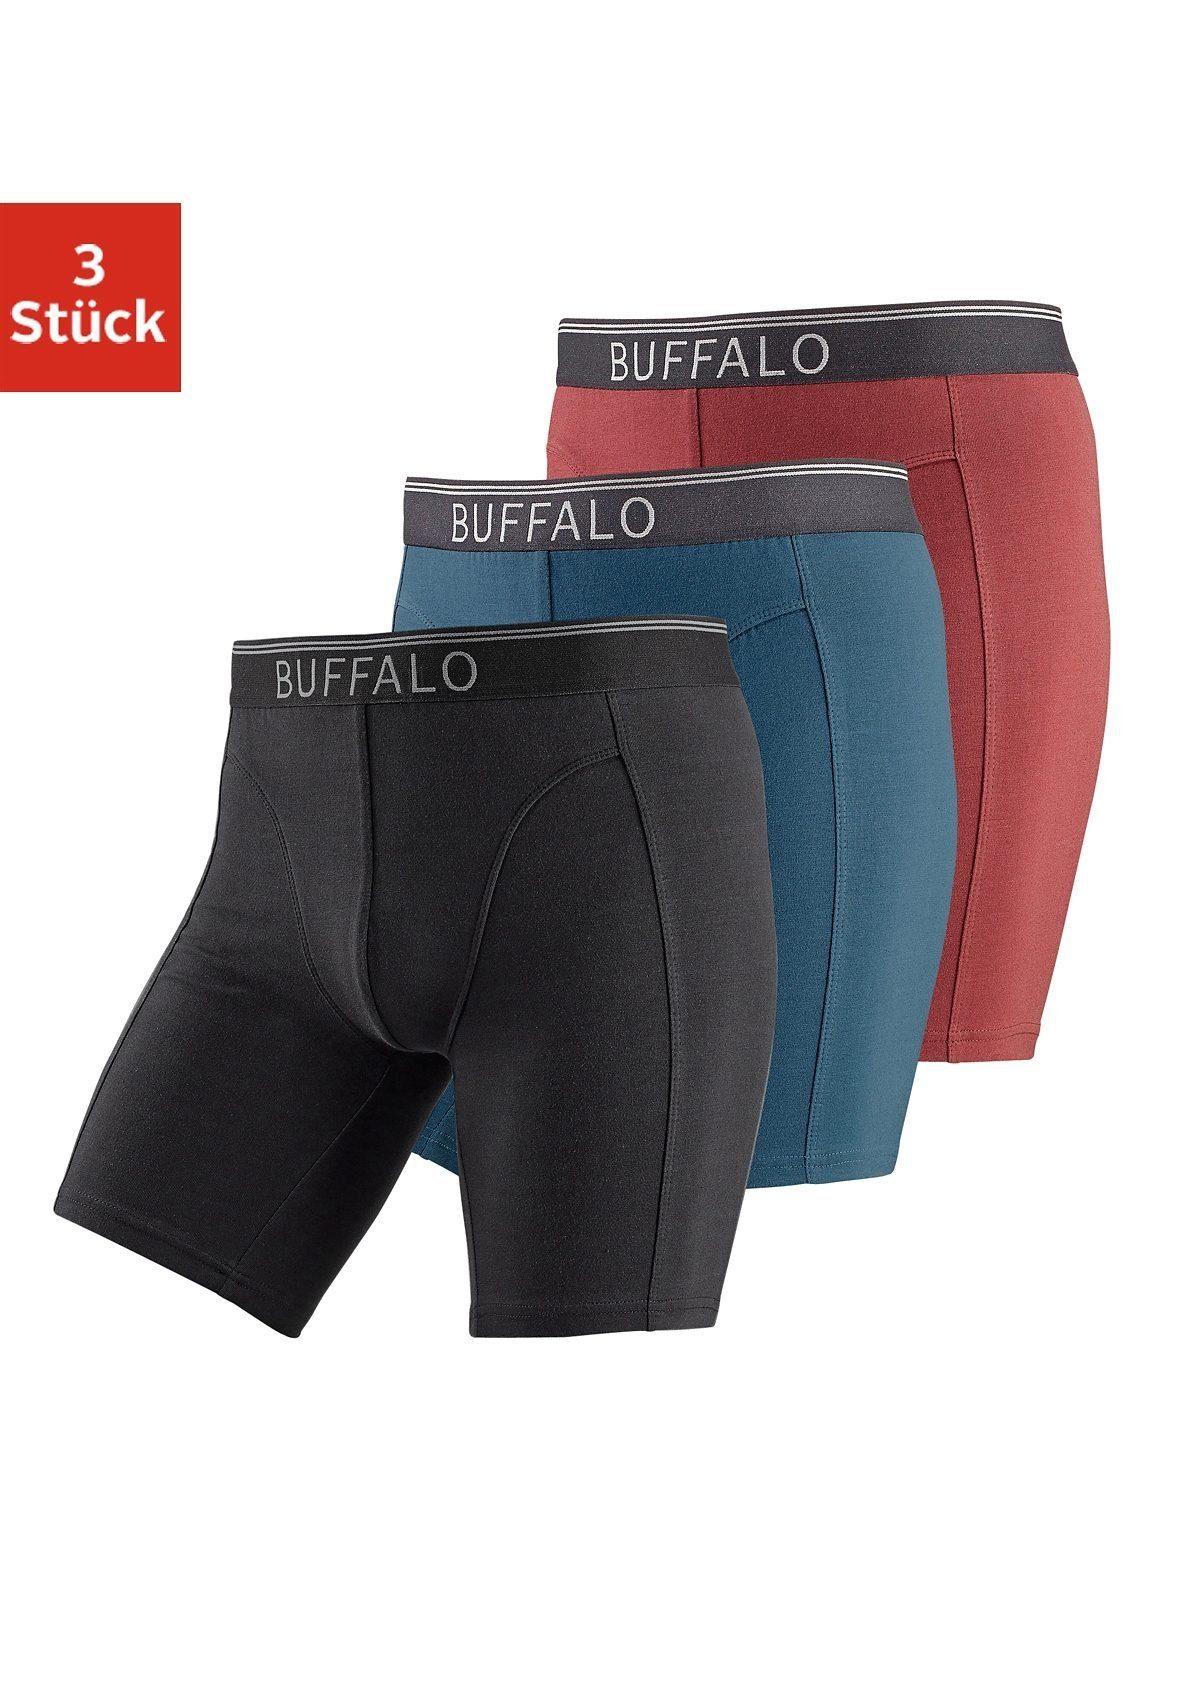 Buffalo Boxer (Packung, 3-St) in langer Form ideal auch für Sport und Trekking bordeaux, petrol, schwarz